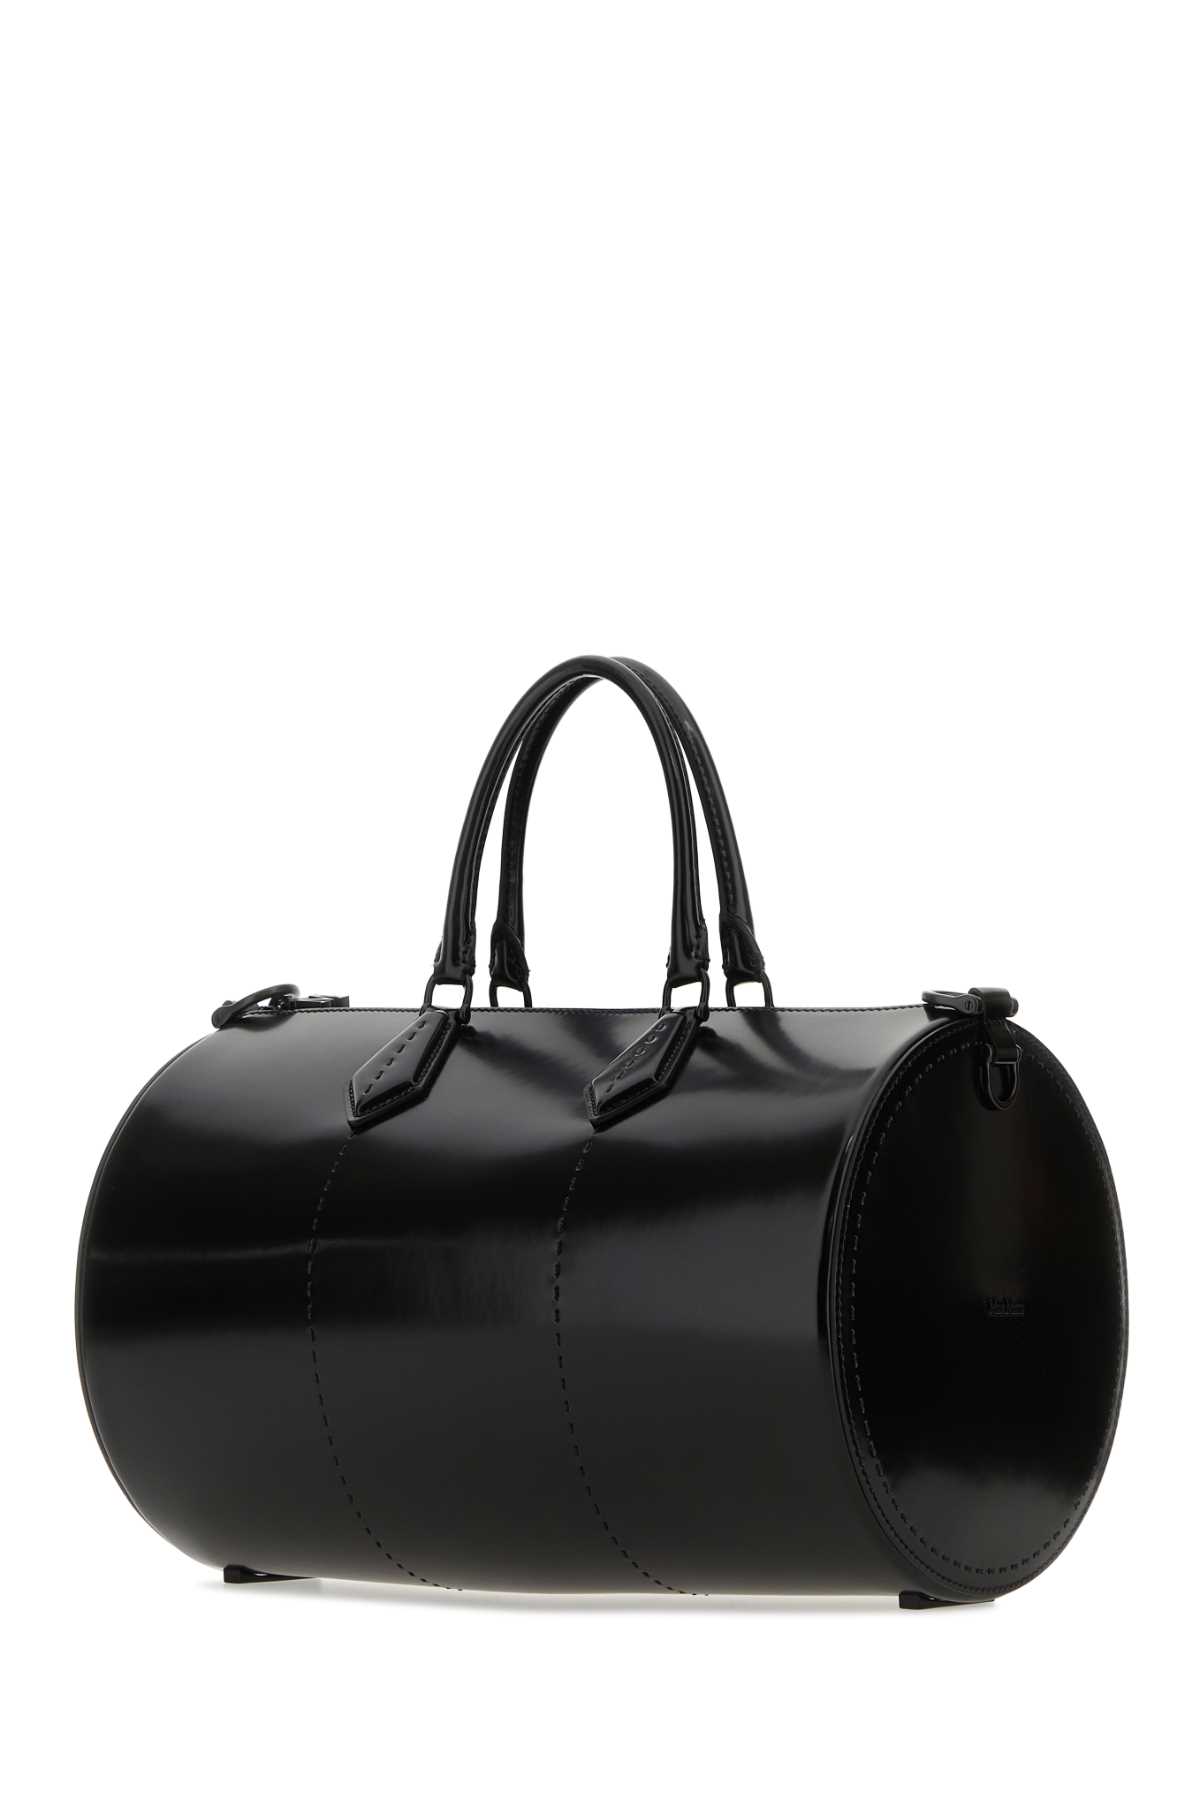 Max Mara Black Leather Brushedrolll Handbag In Nero